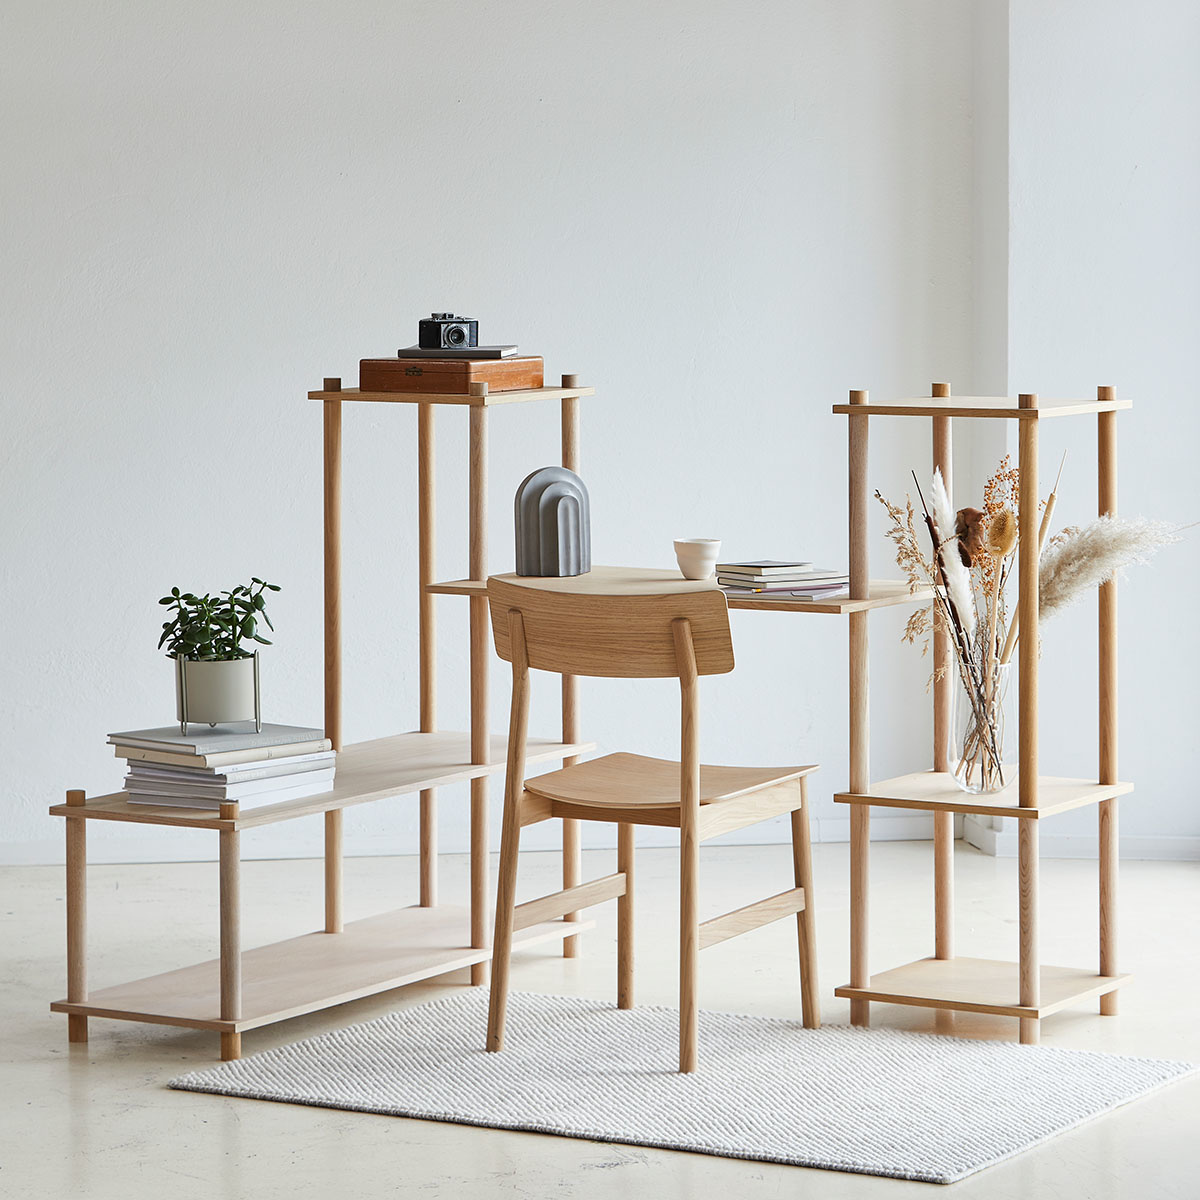 Pause, chaise design bois et cuir Woud